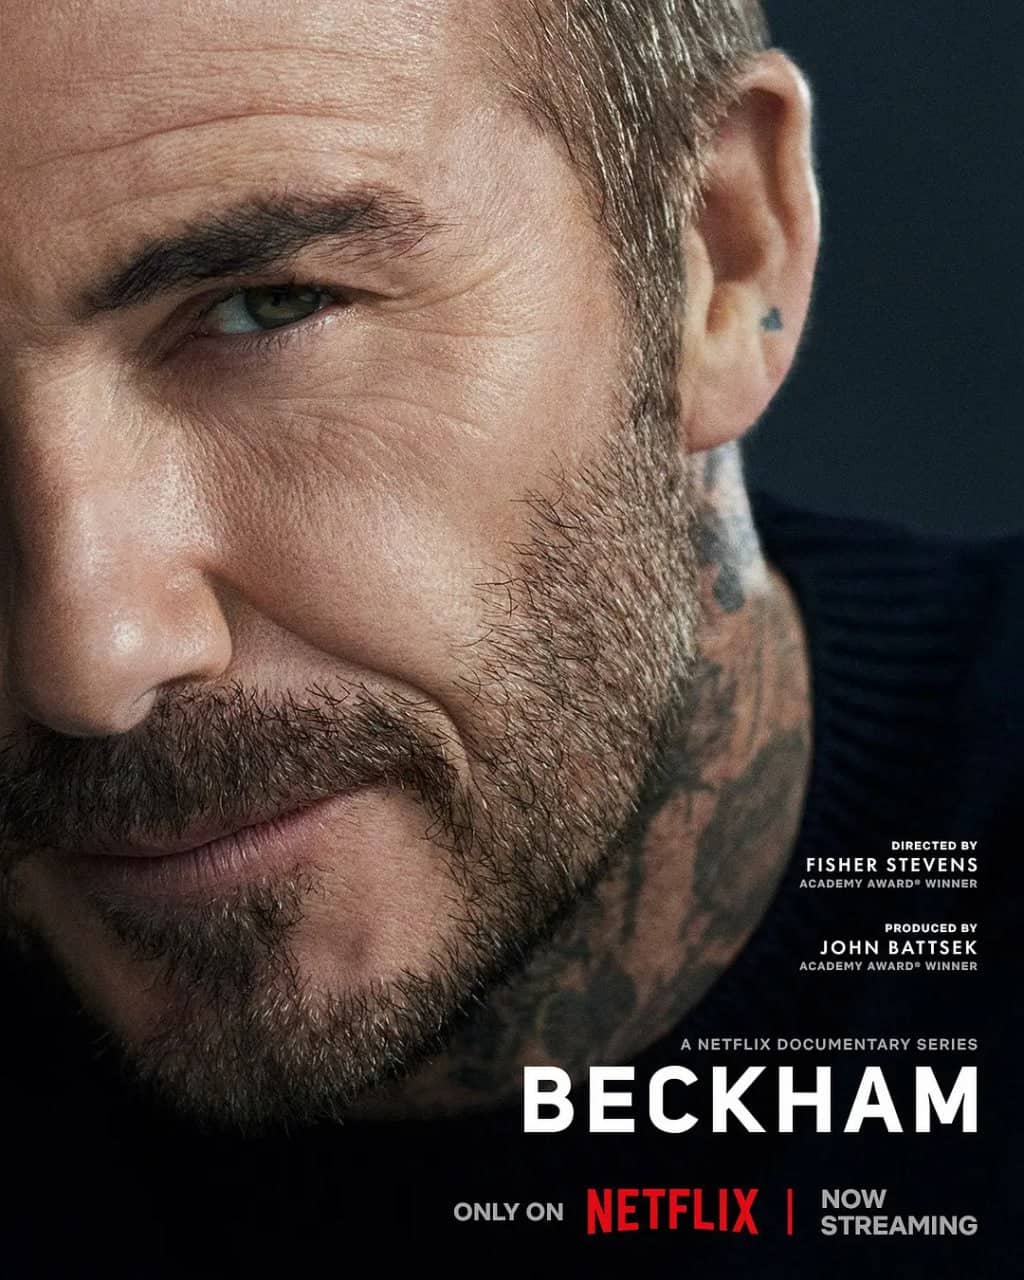 贝克汉姆 Beckham (2023) 2160p HDR&DV 内封简英特效&繁英特效双语 【高分传记】【刮削】